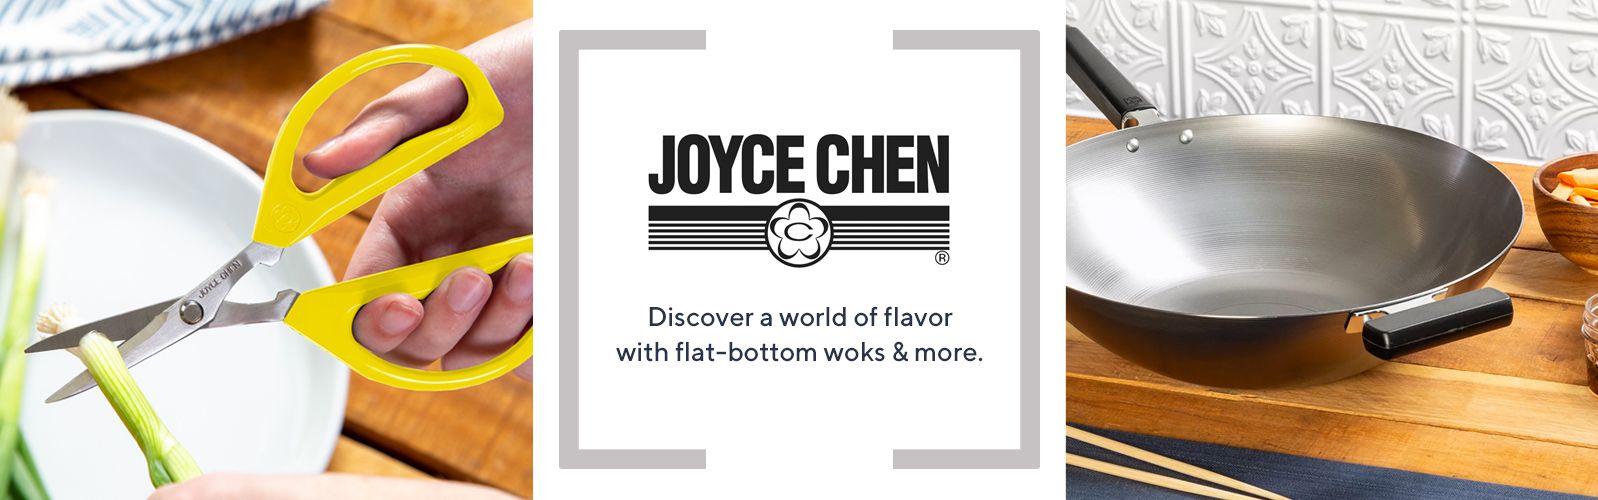 Joyce Chen 10-Piece Wok Set